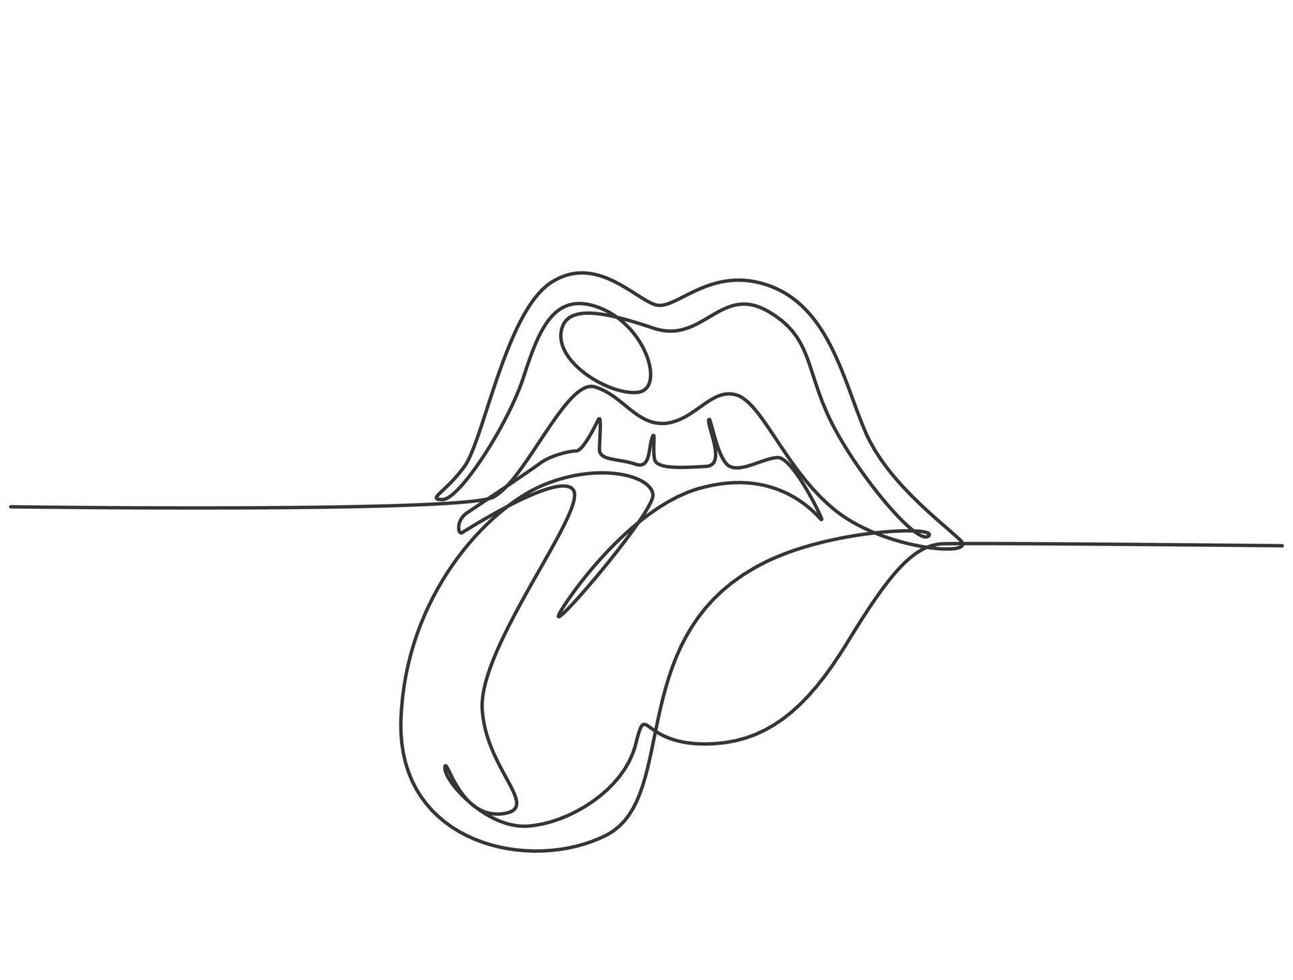 enkele doorlopende lijntekening van oude retro klassieke iconische lippen en tong uit de jaren 80. vintage pictogram concept een lijn tekenen grafisch ontwerp vectorillustratie vector